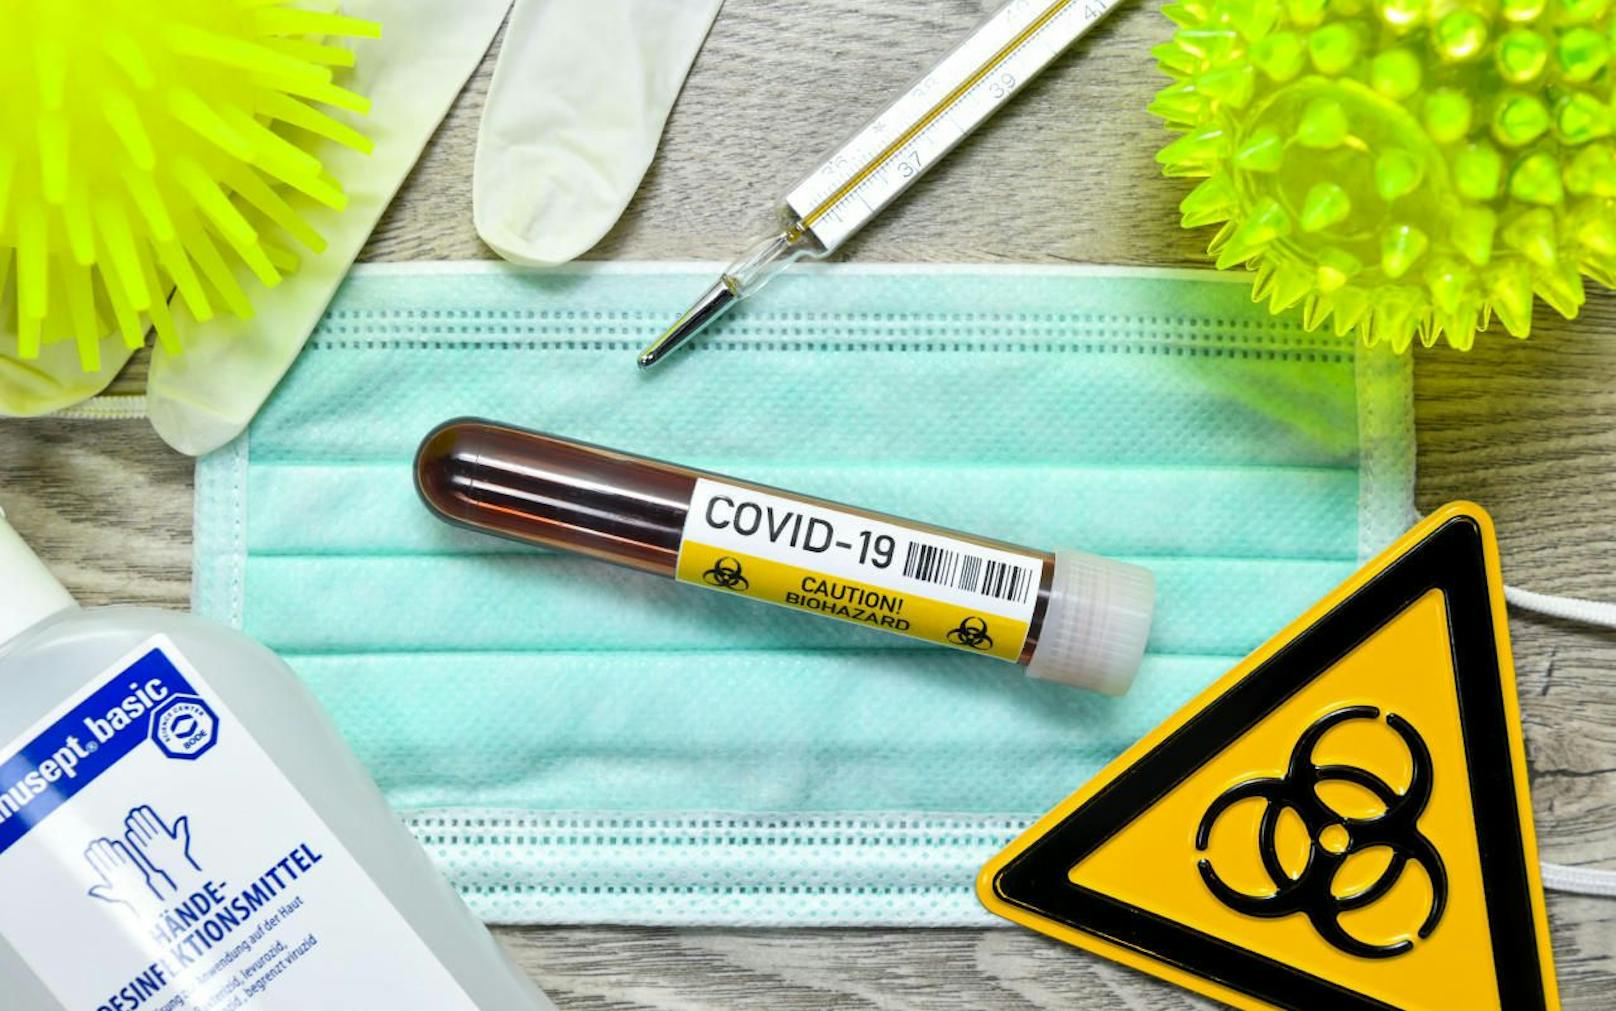 In den Kampf gegen CoVid-19 spendet Beiersdorf jetzt 500 Tonnen Desinfektionsmittel an Hilfskräfte.